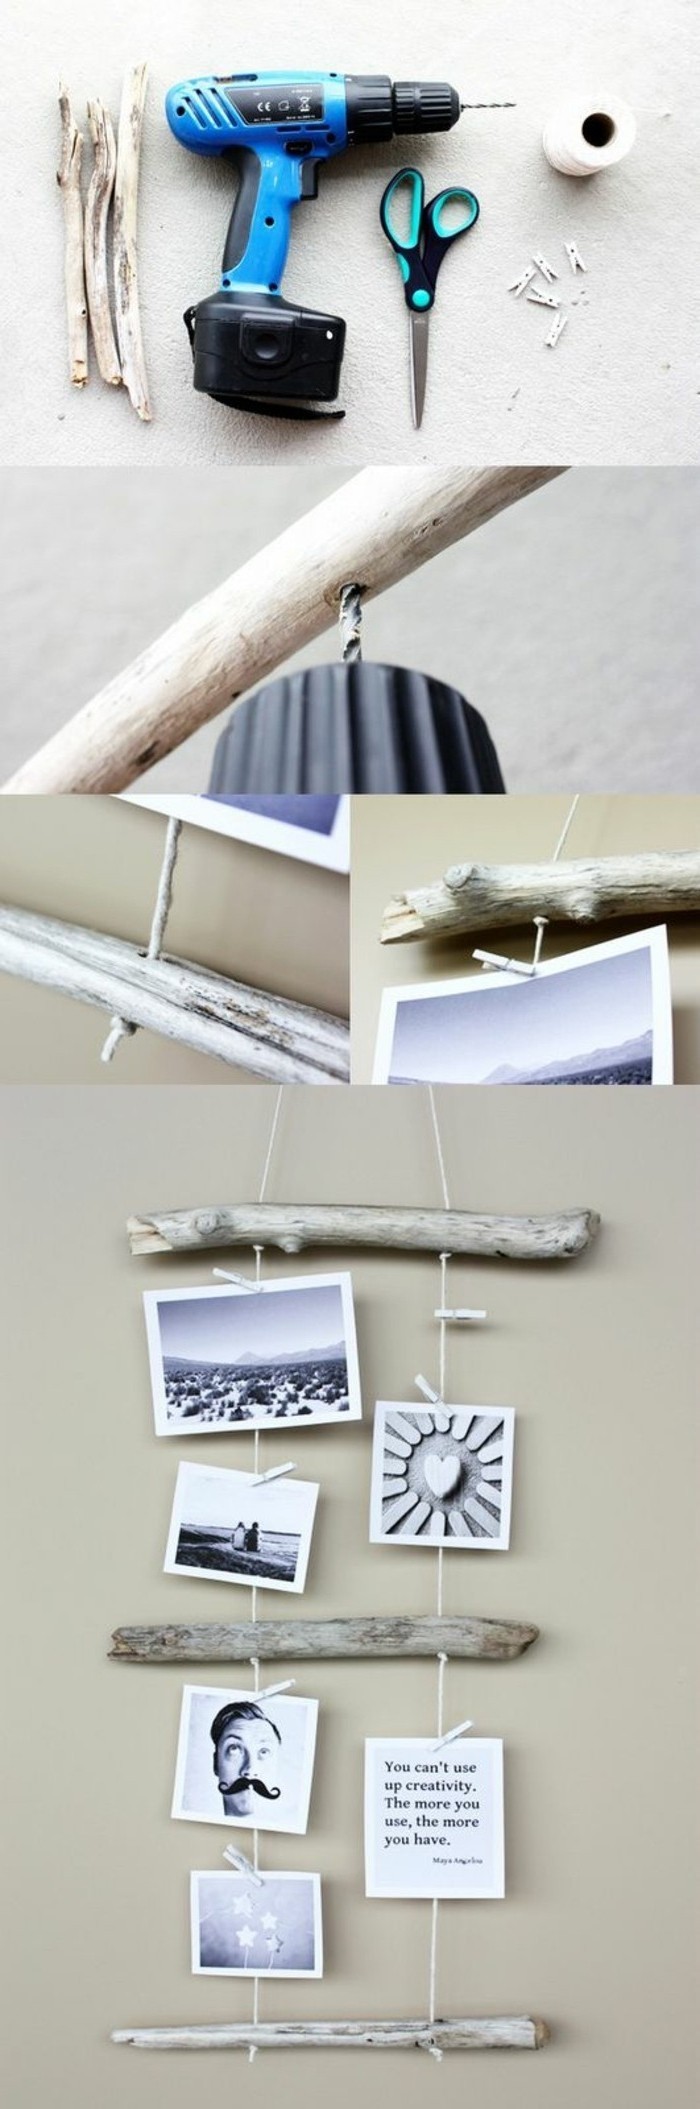 5-Tinker-con-madera a la deriva-fotowand bricolaje de decisiones wallpaper AESTE de perforación-tijeras